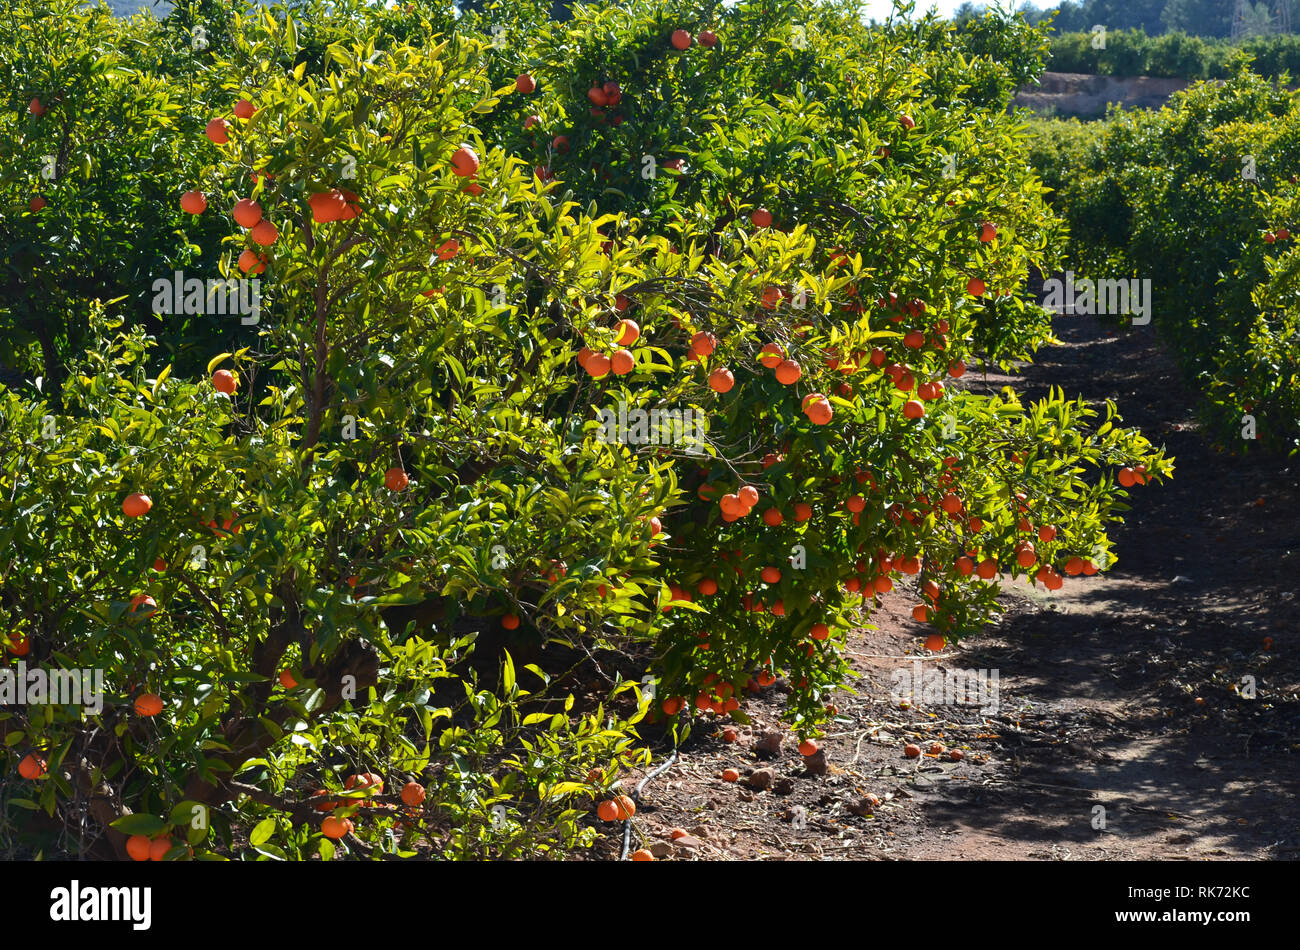 Clementinen links voneinander getrennt in den Bäumen, zeigt die Auswirkungen der 2019 Zitrusfrüchte Krise in Valencia, Spanien Stockfoto